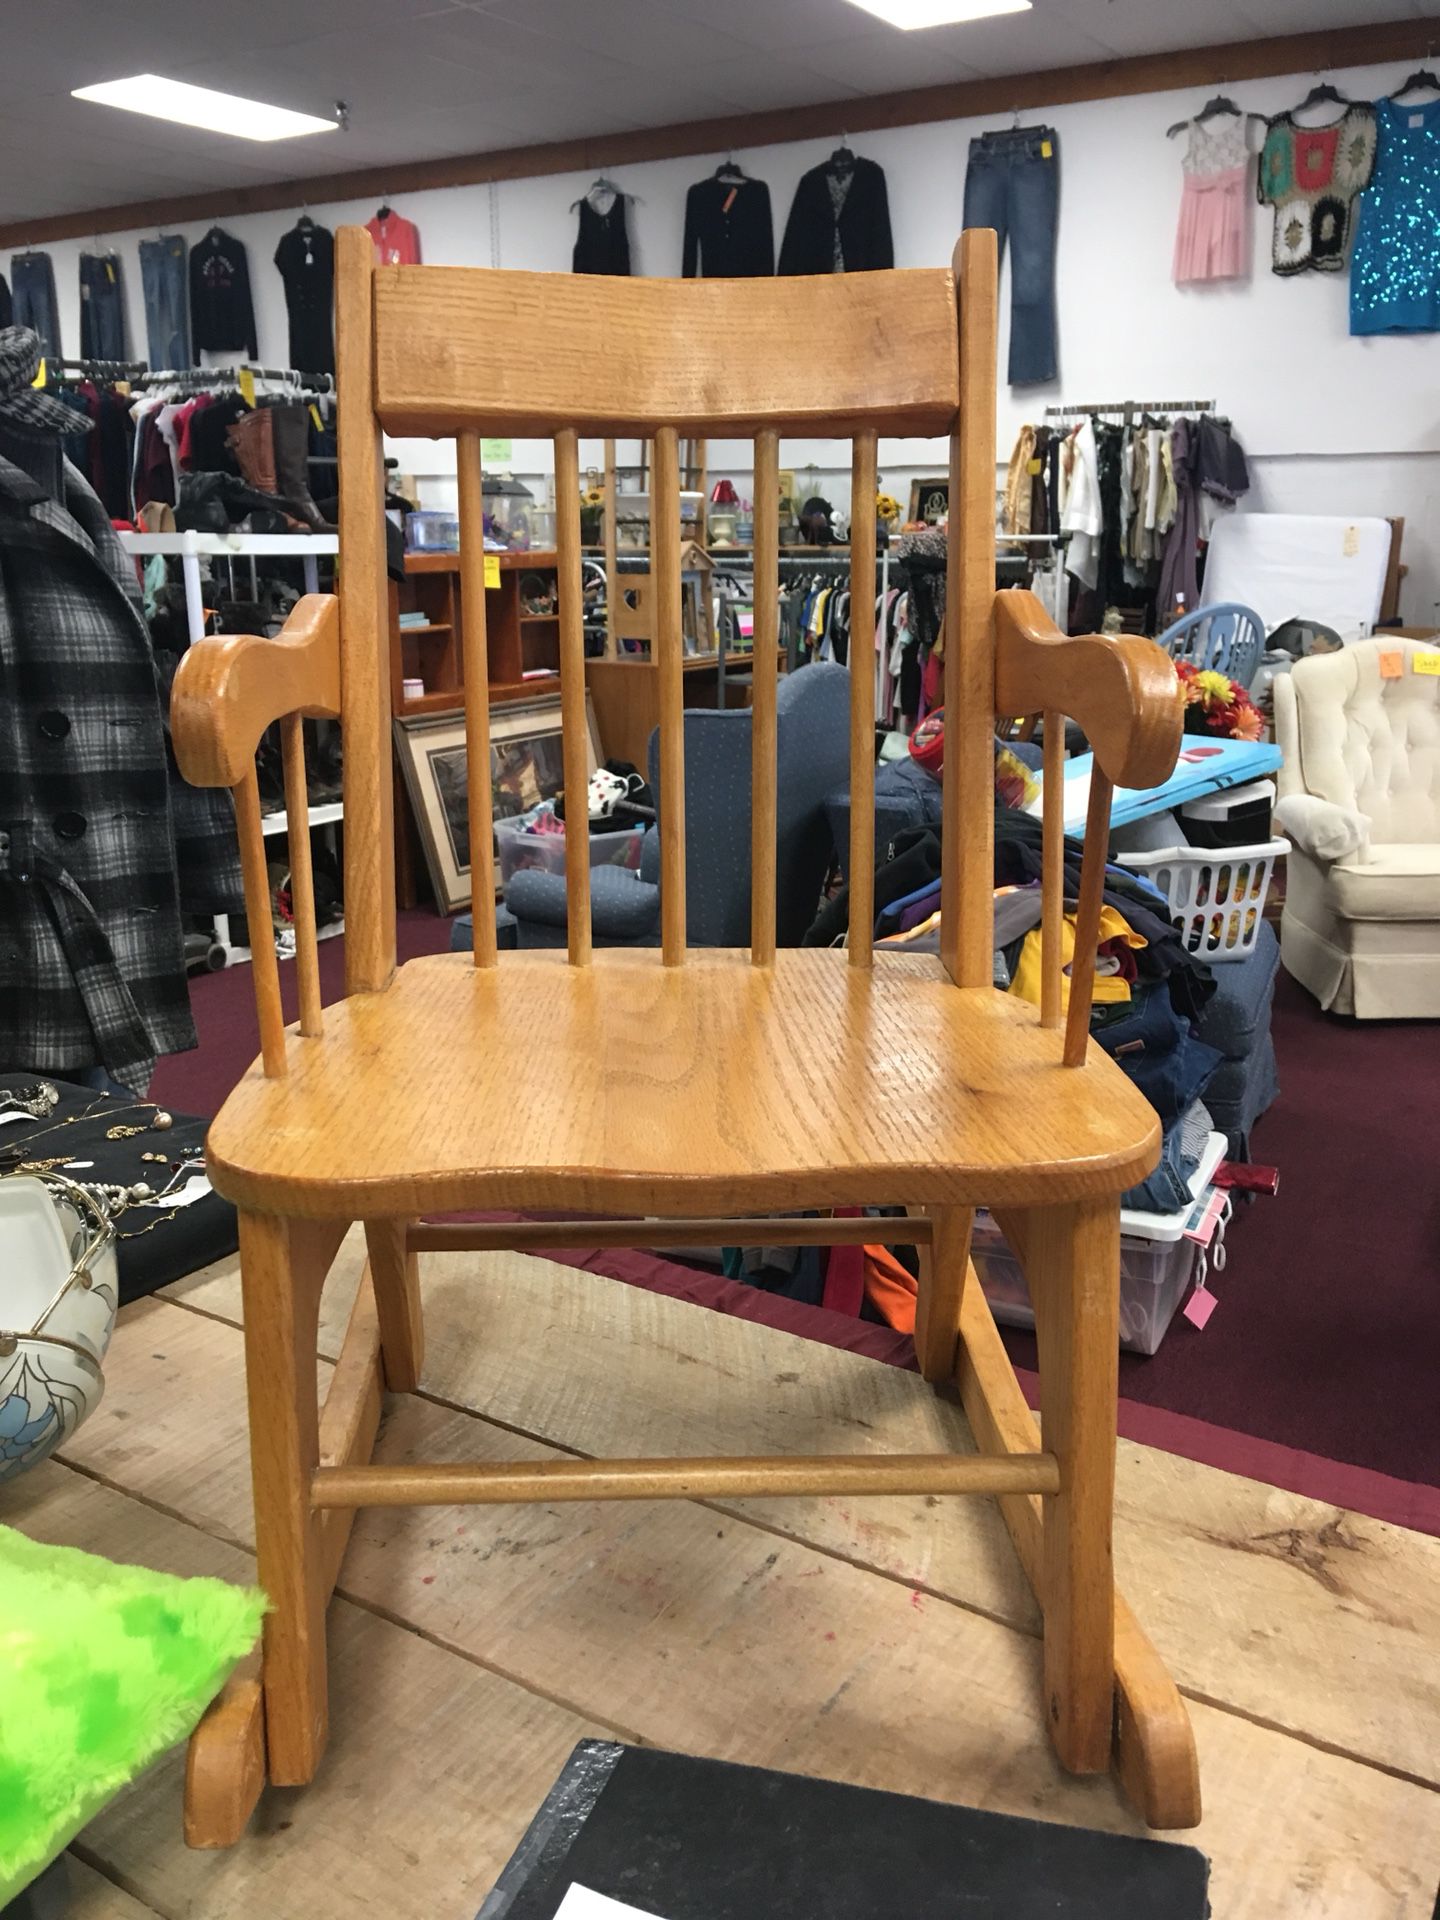 Child rocking chair